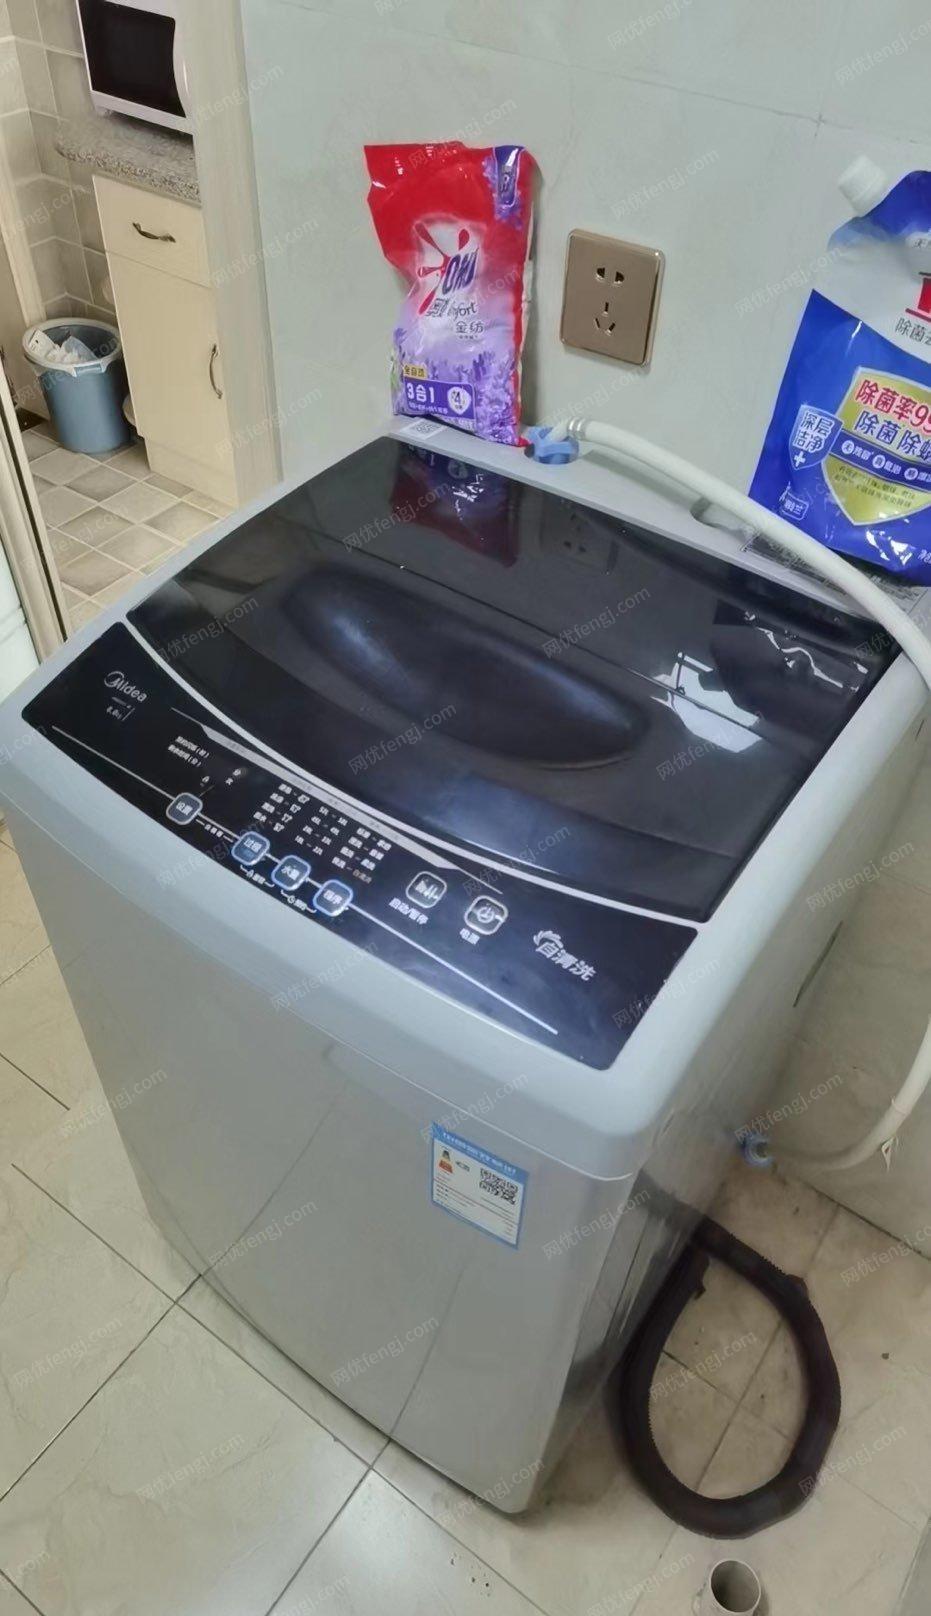 西藏拉萨美的8公斤全自动洗衣机600元95新出售